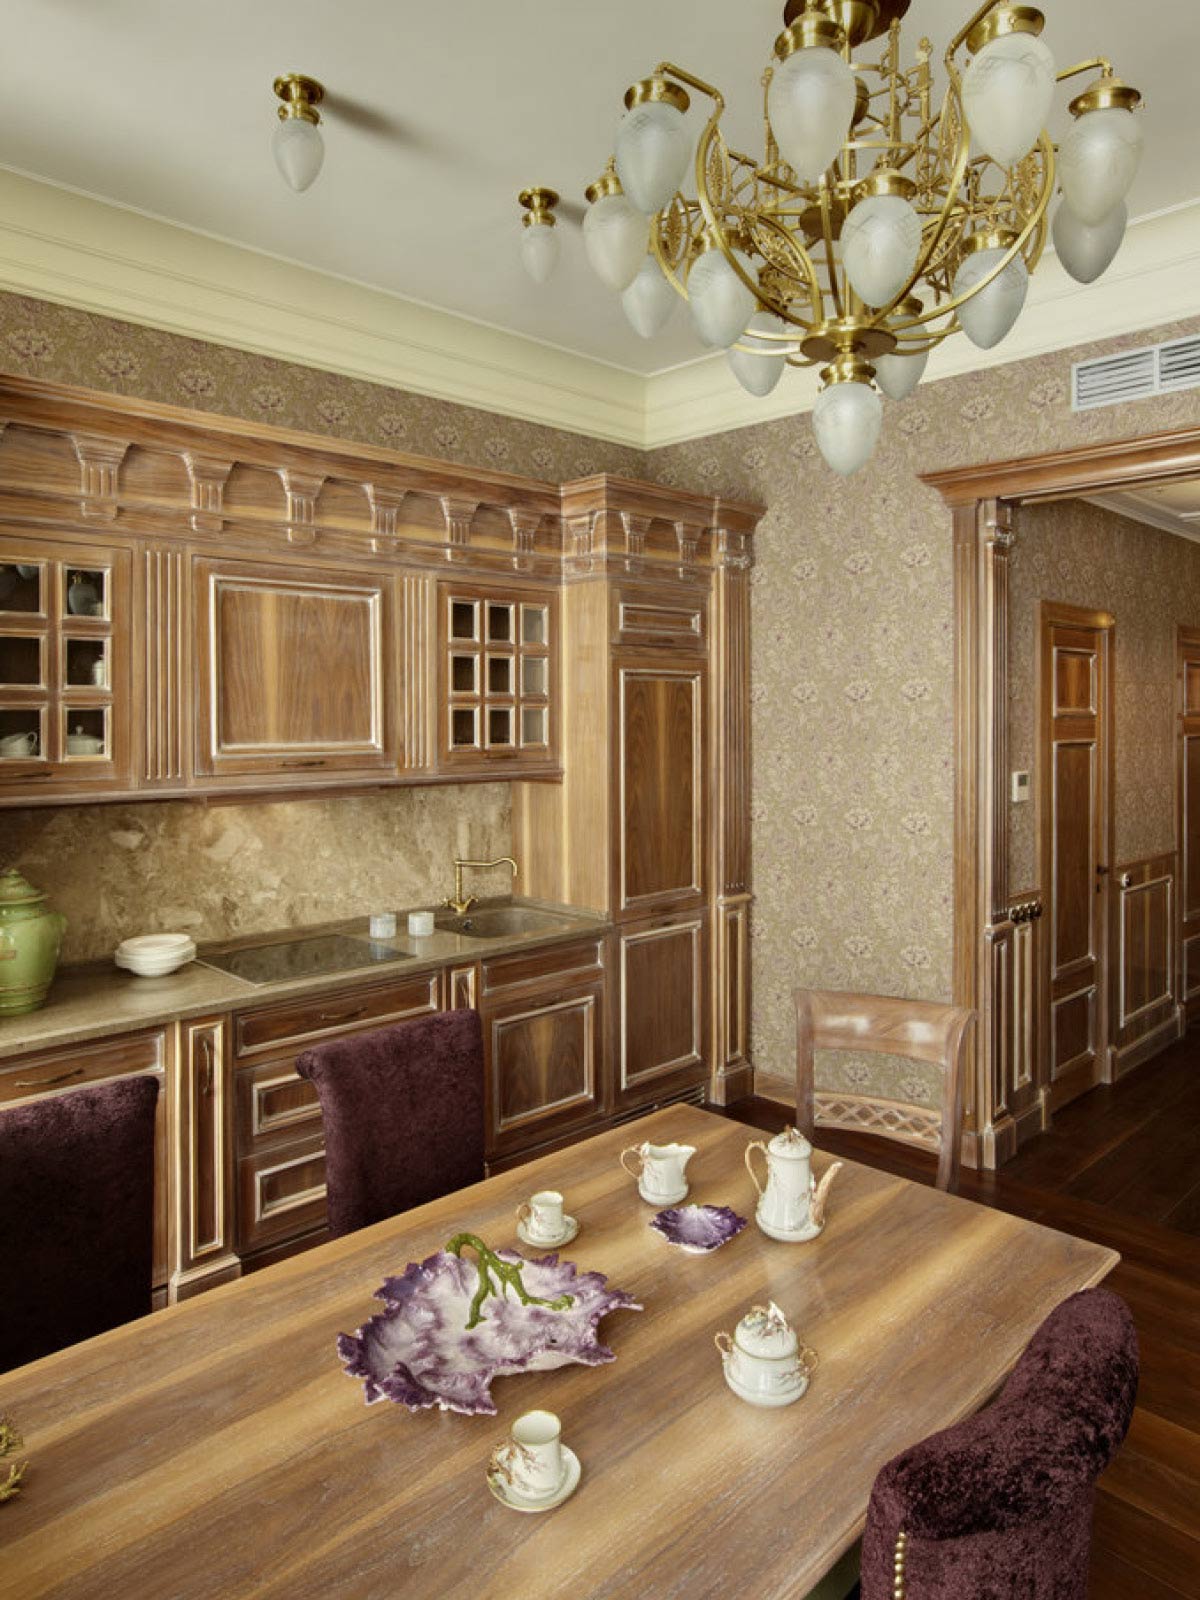 MOSCOW, Russia – Progetto cucina in residenza privata.